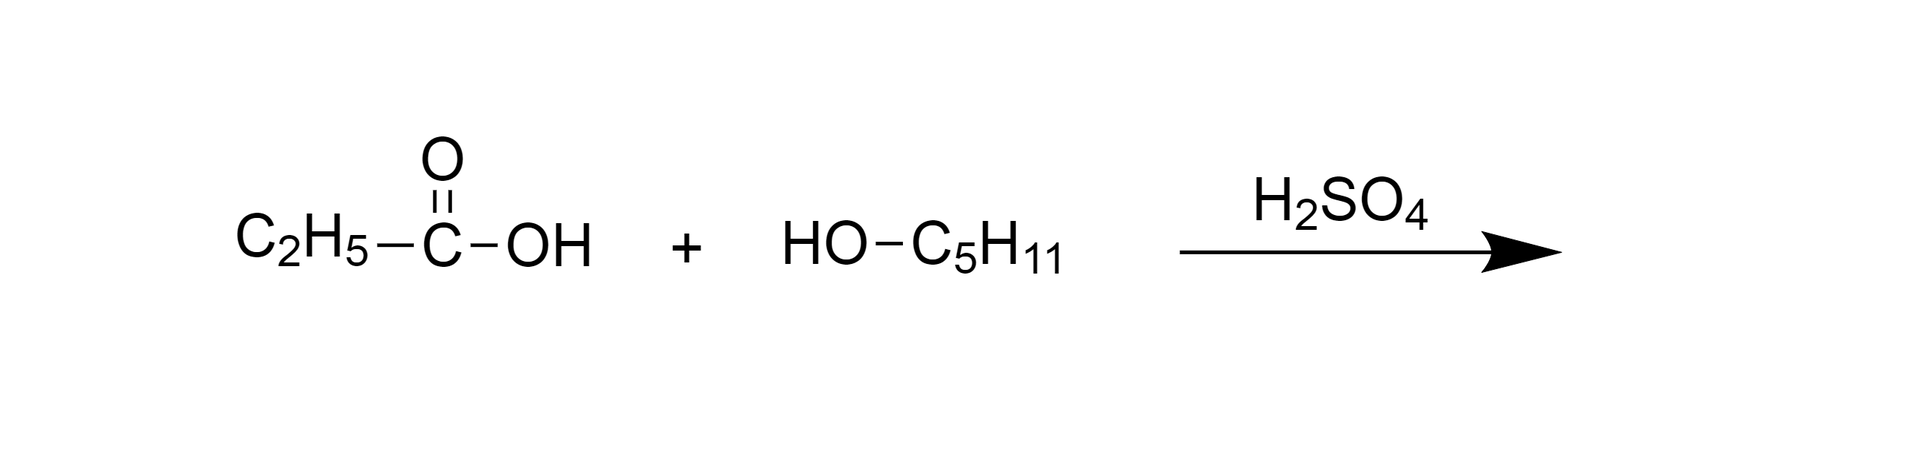 Ilustracja przedstawiająca równanie reakcji pomiędzy kwasem propionowym oraz  pentan-1-olem. Cząsteczka kwasu propionowego zbudowana z grupy etylowej C2H5 związanej z atomem węgla połączonym za pomocą wiązania podwójnego z atomem tlenu oraz za pomocą wiązania pojedynczego z grupą hydroksylową OH. Dodać cząsteczka pentan-1-olu zbudowana z grupy C5H11 połączonej z grupą hydroksylową OH. Strzałka w prawo, nad strzałką stężony kwas siarkowy.